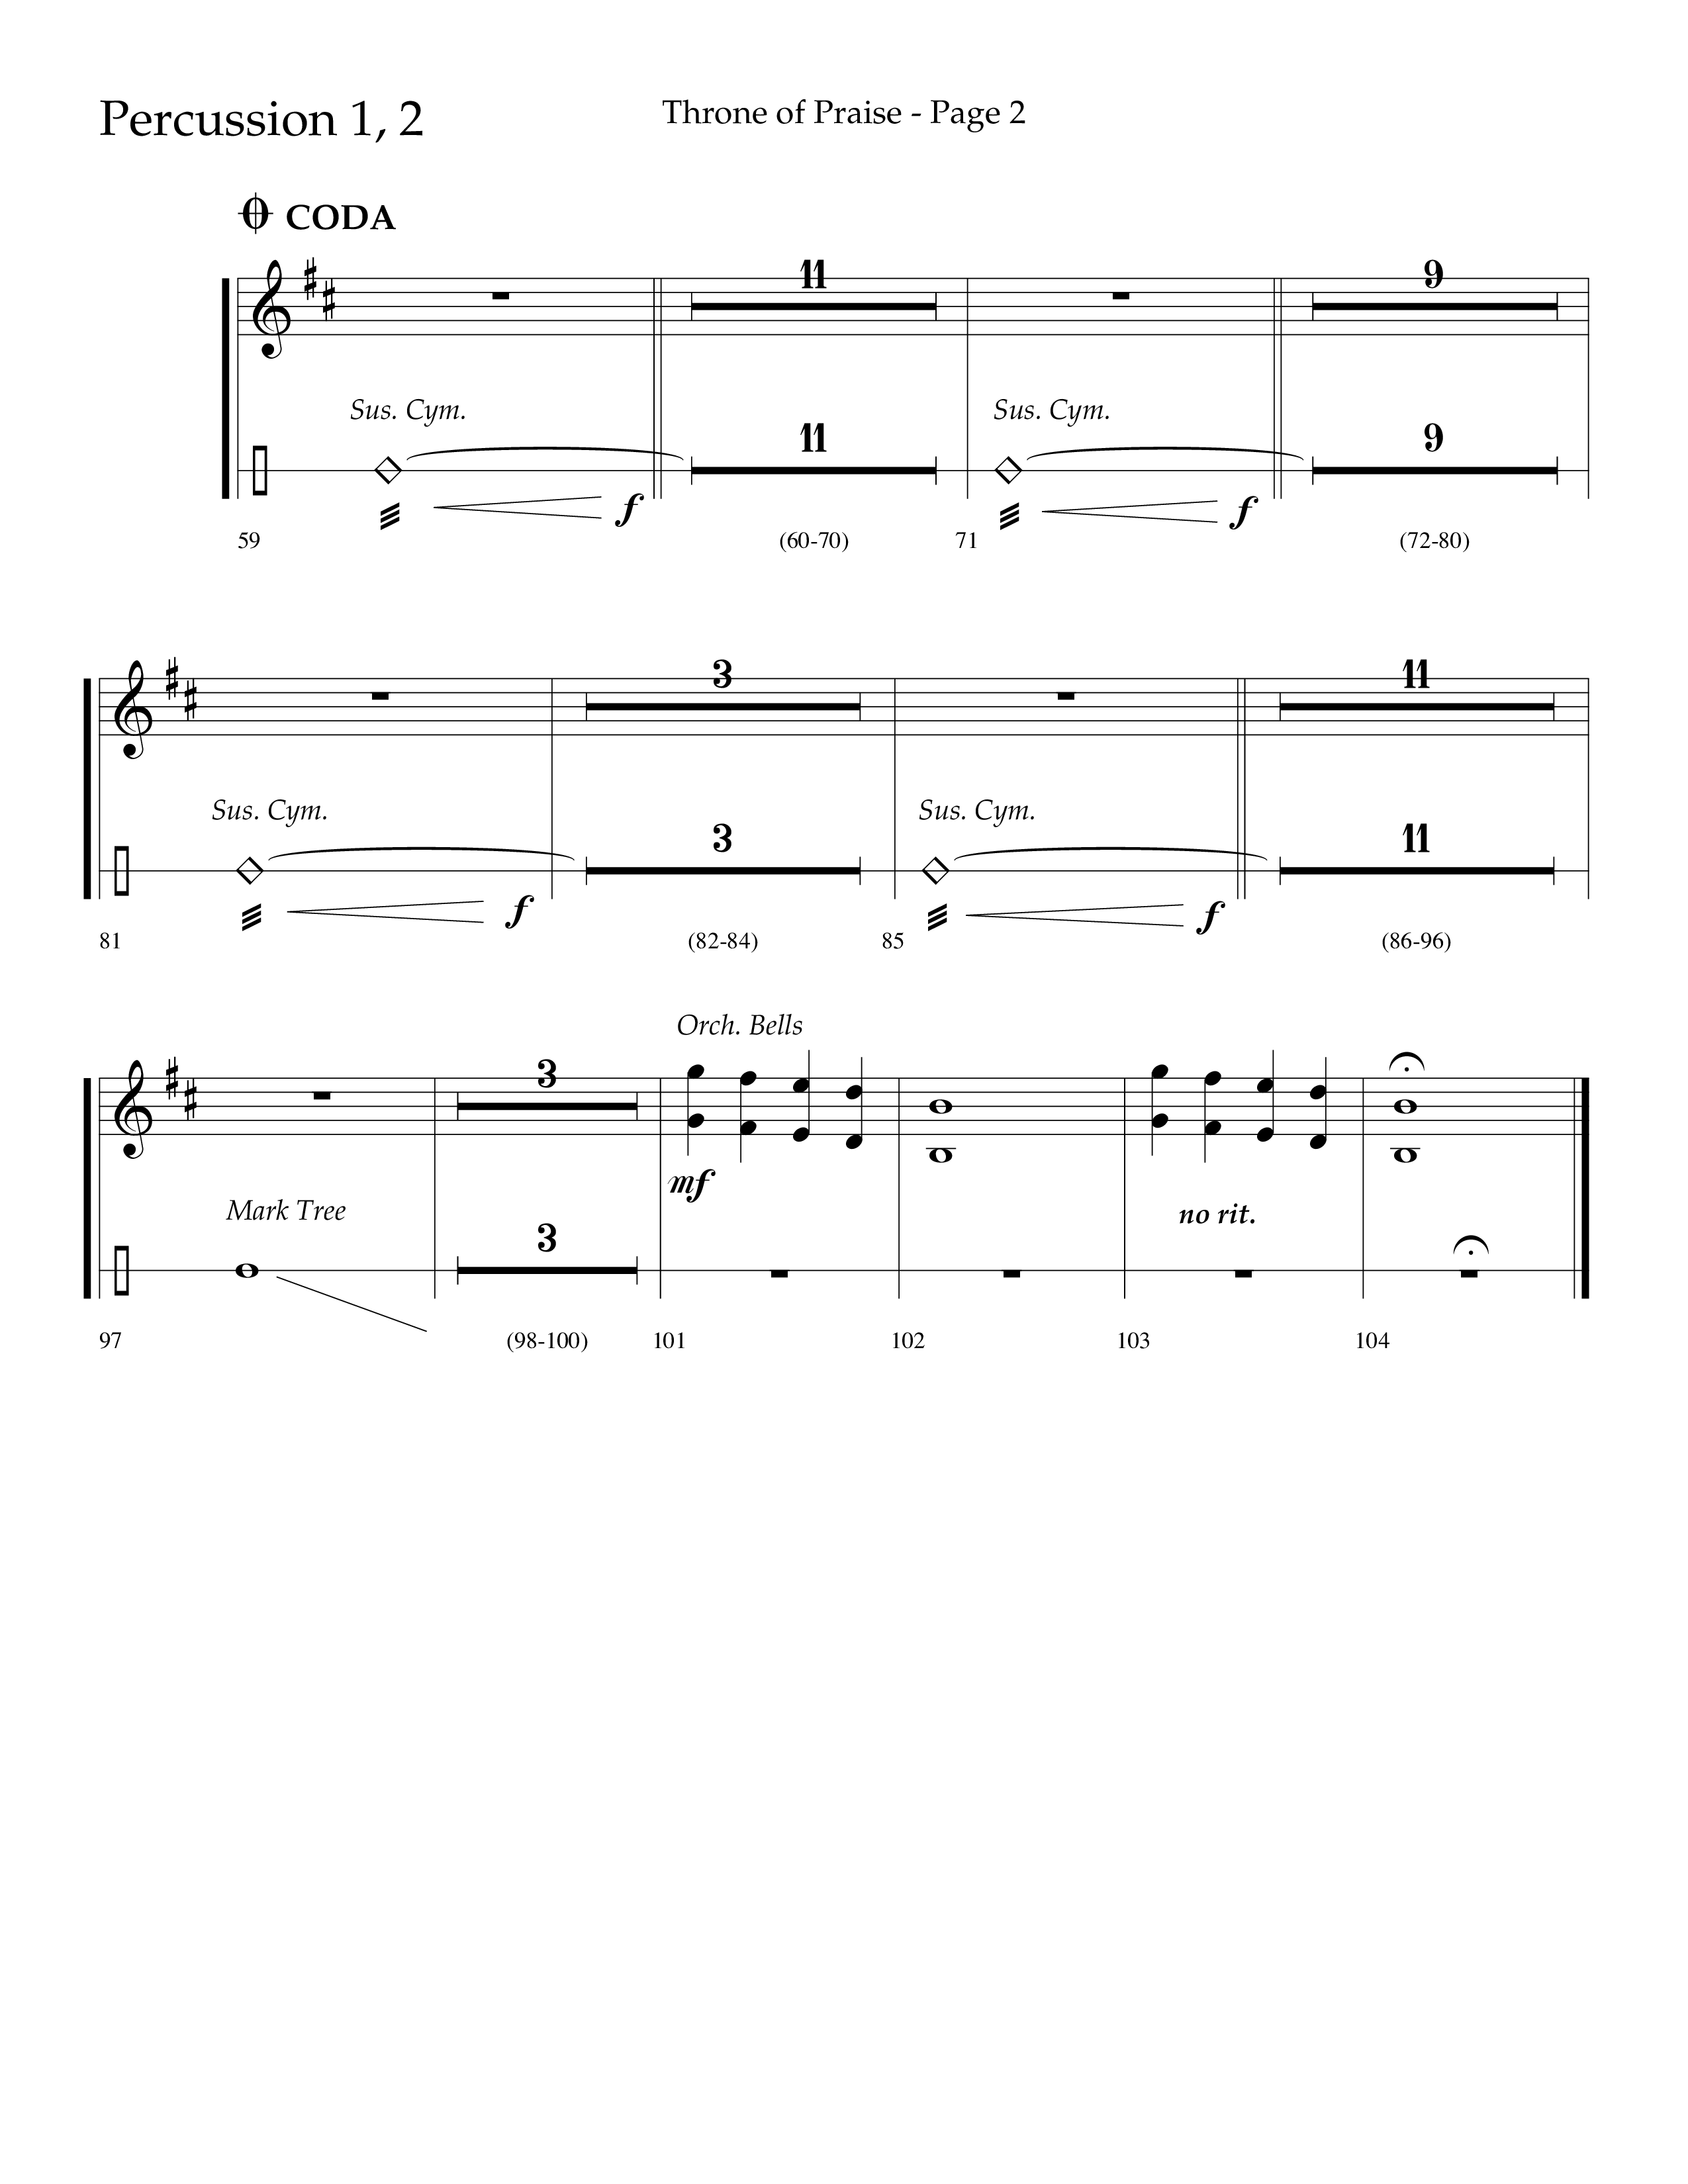 Throne Of Praise (Choral Anthem SATB) Percussion 1/2 (Lifeway Choral / Arr. J. Daniel Smith)